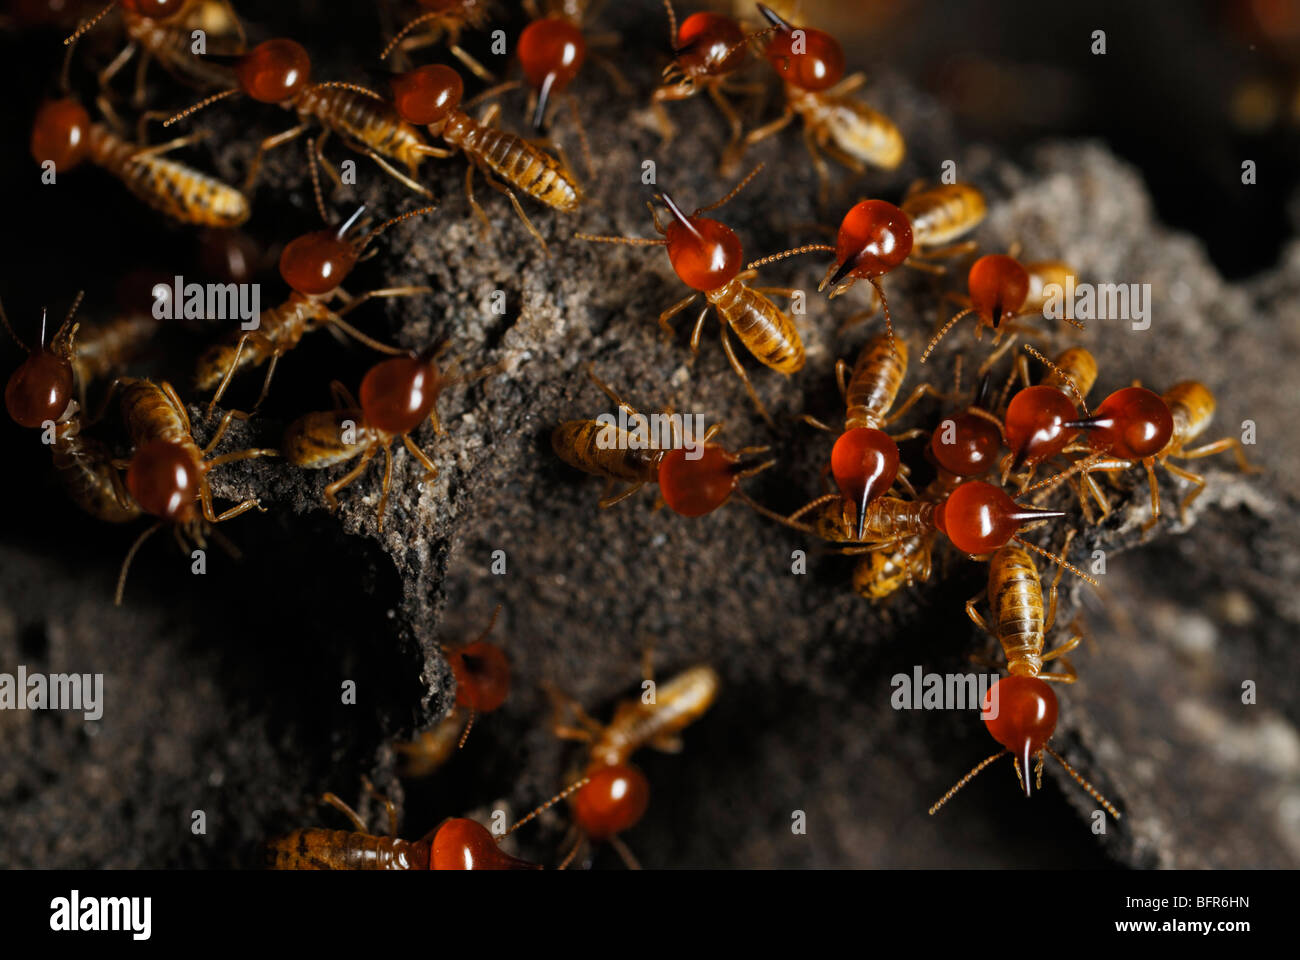 Soldado termitas snouted Foto de stock